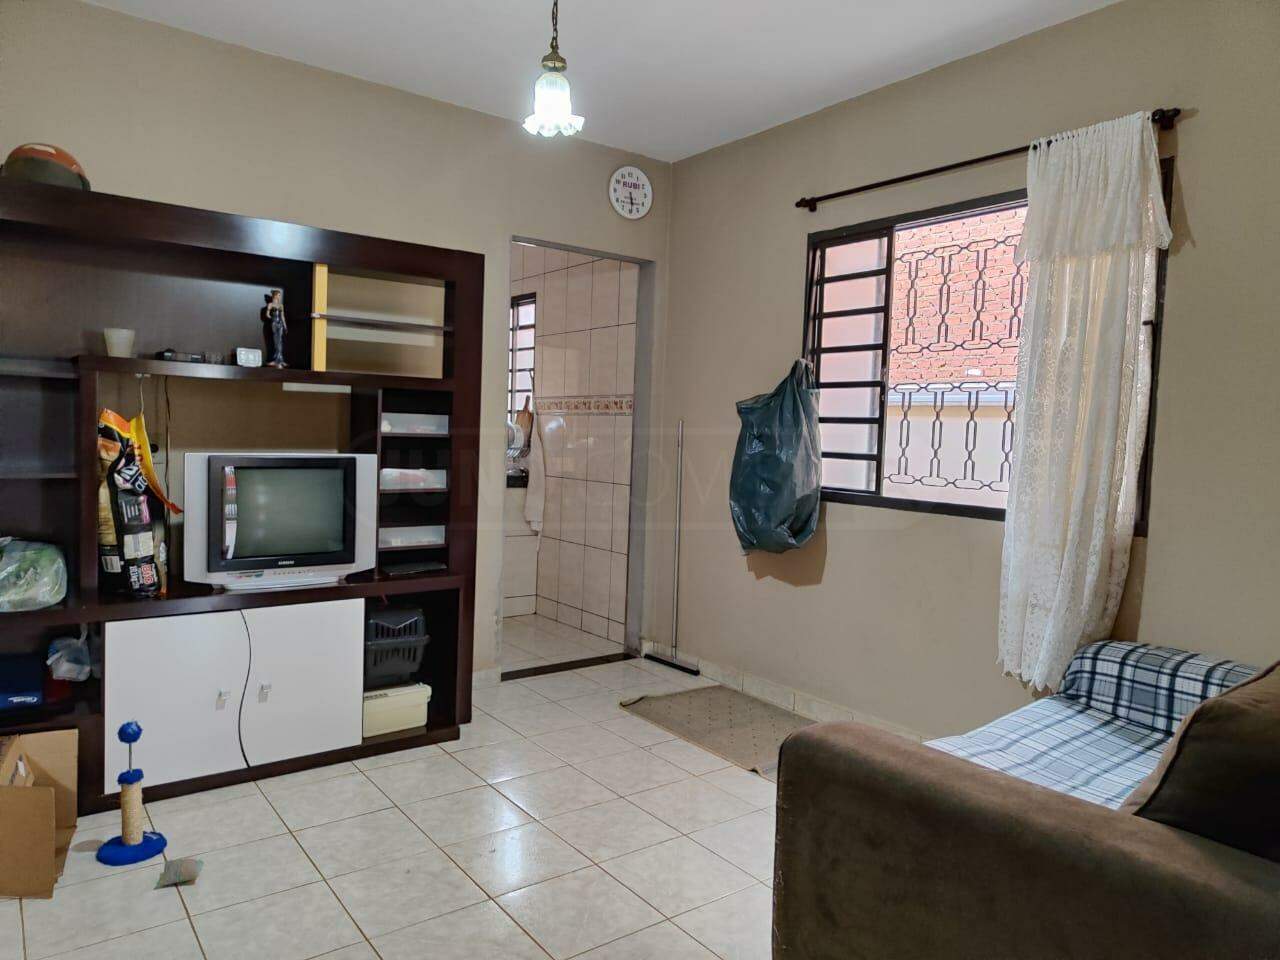 Casa à venda, 2 quartos, 1 vaga, no bairro Jardim Bom Jesus II em Rio das Pedras - SP